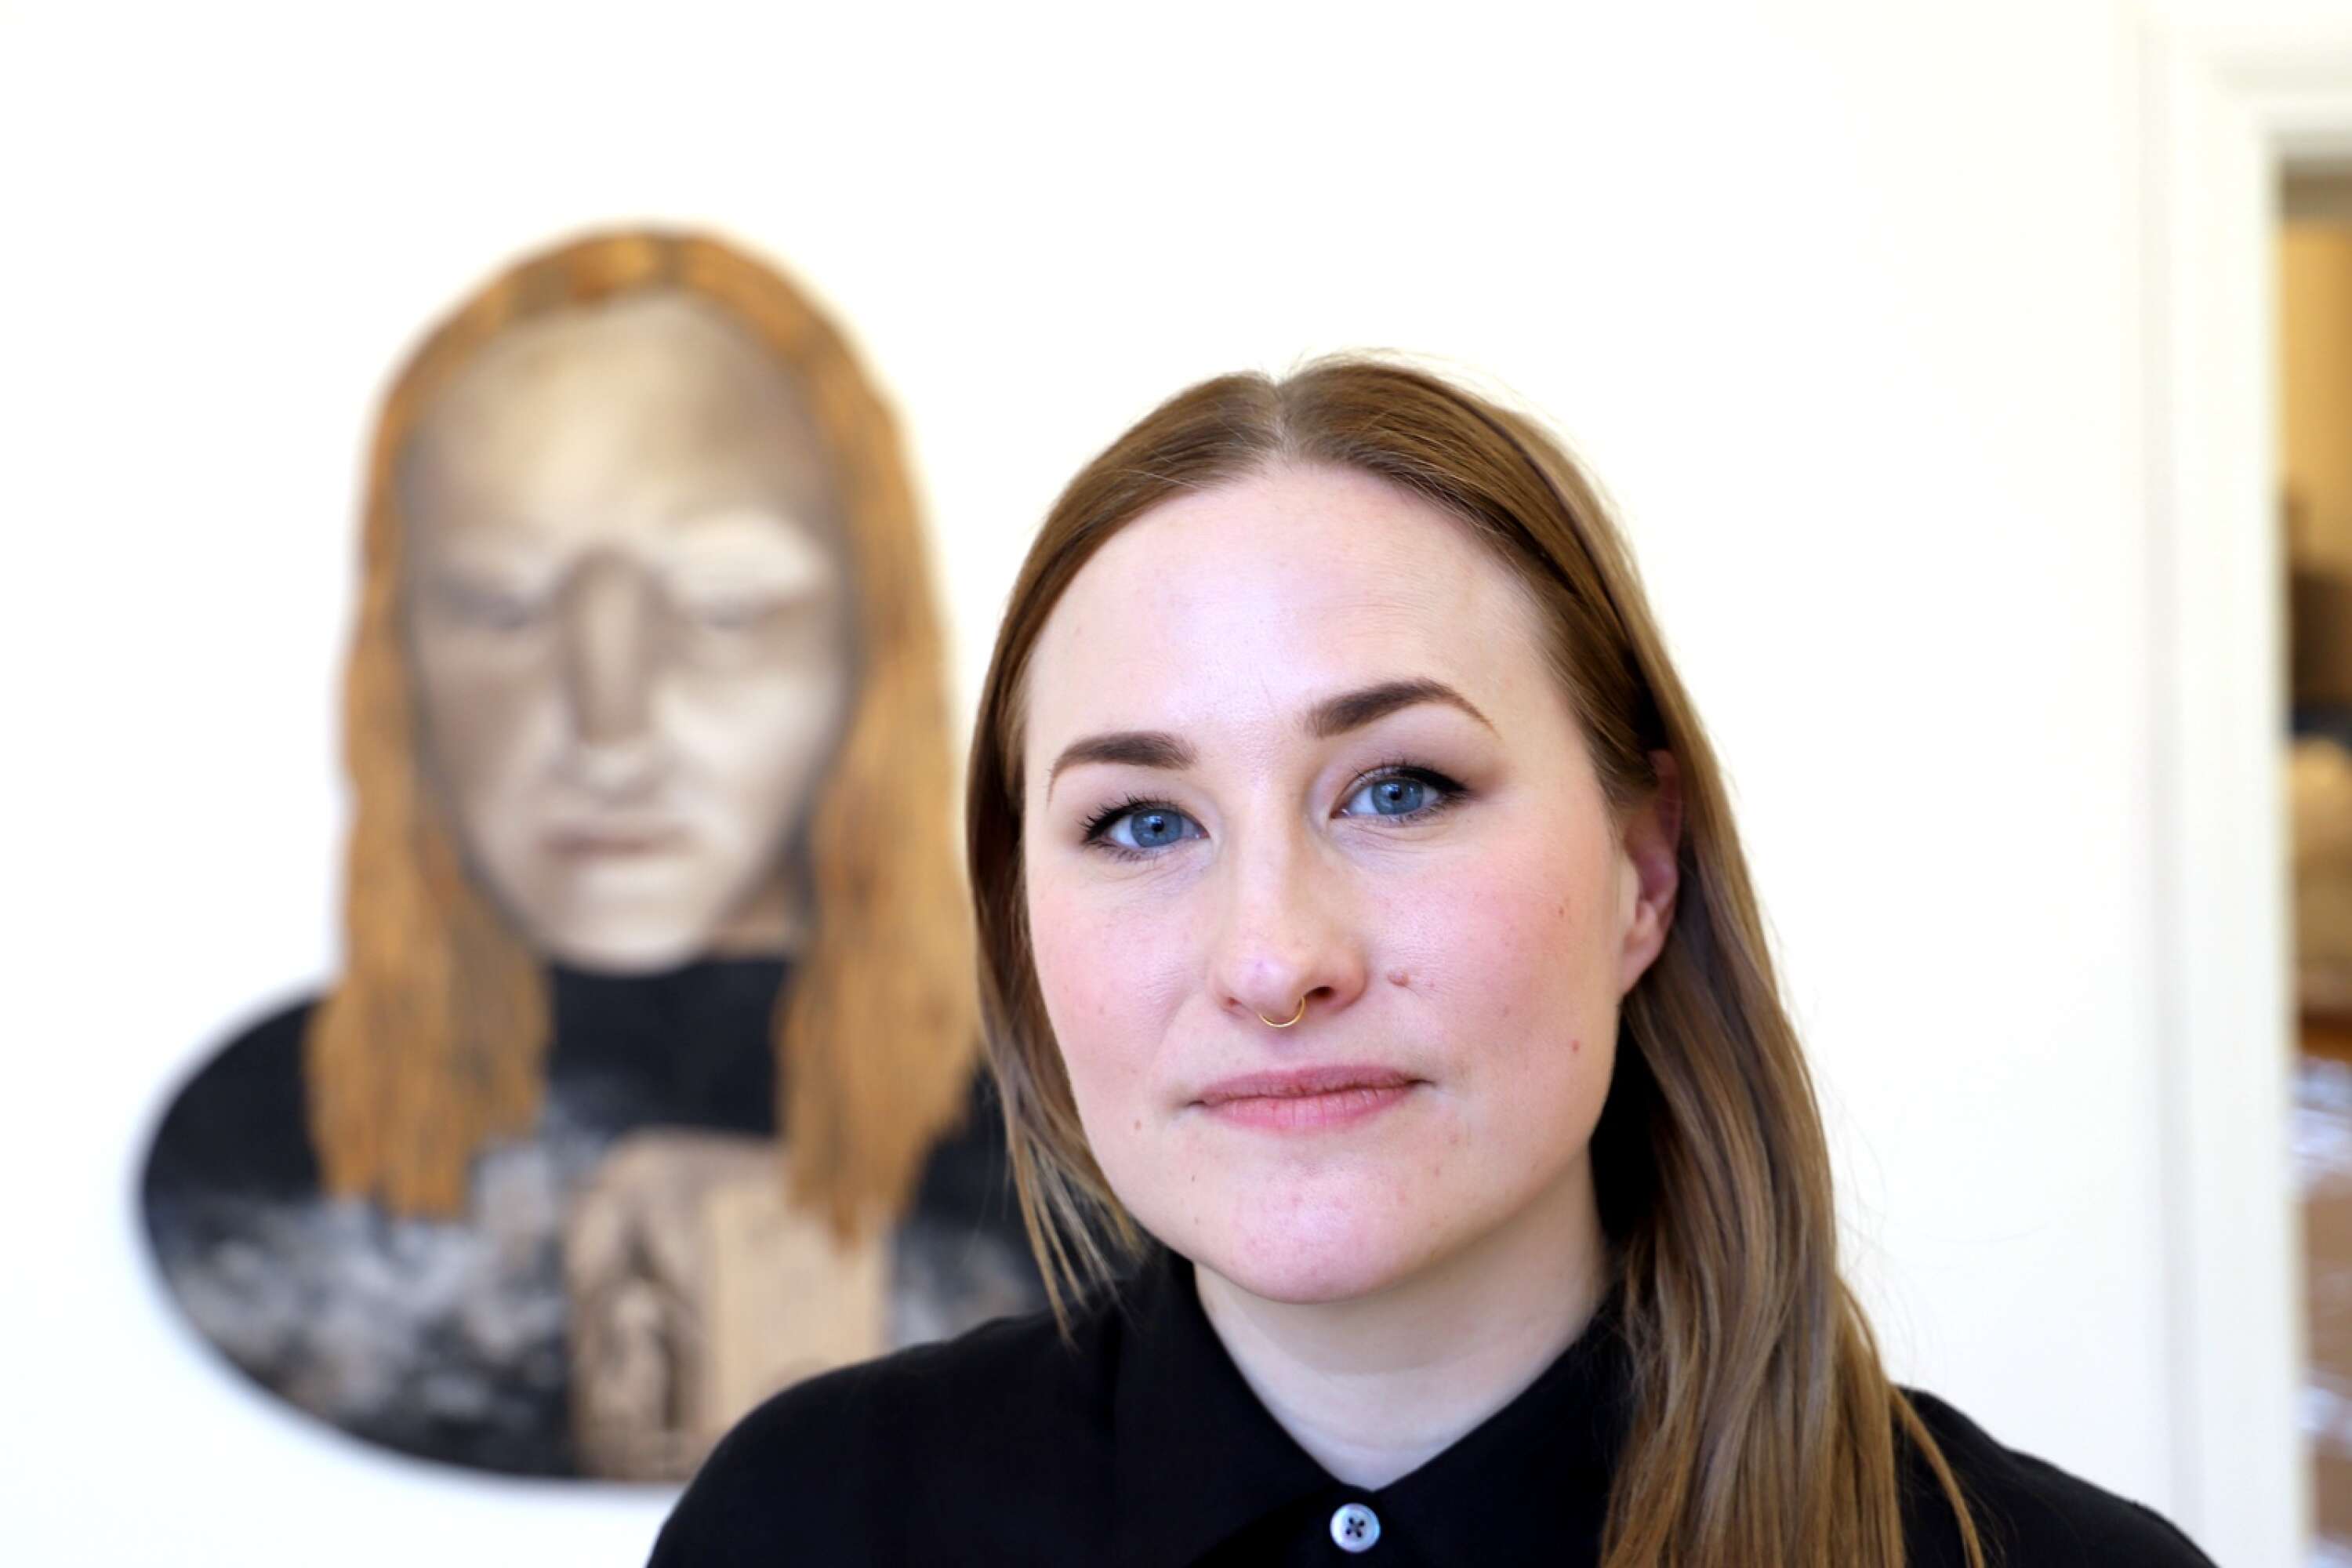 Julia Olofsson är född 1984 och uppvuxen i Karlstad, på Stockfallet. Hon bor i Utby i Göteborg sedan 2006, efter att ha läst två år i Växjö på designprogrammet.